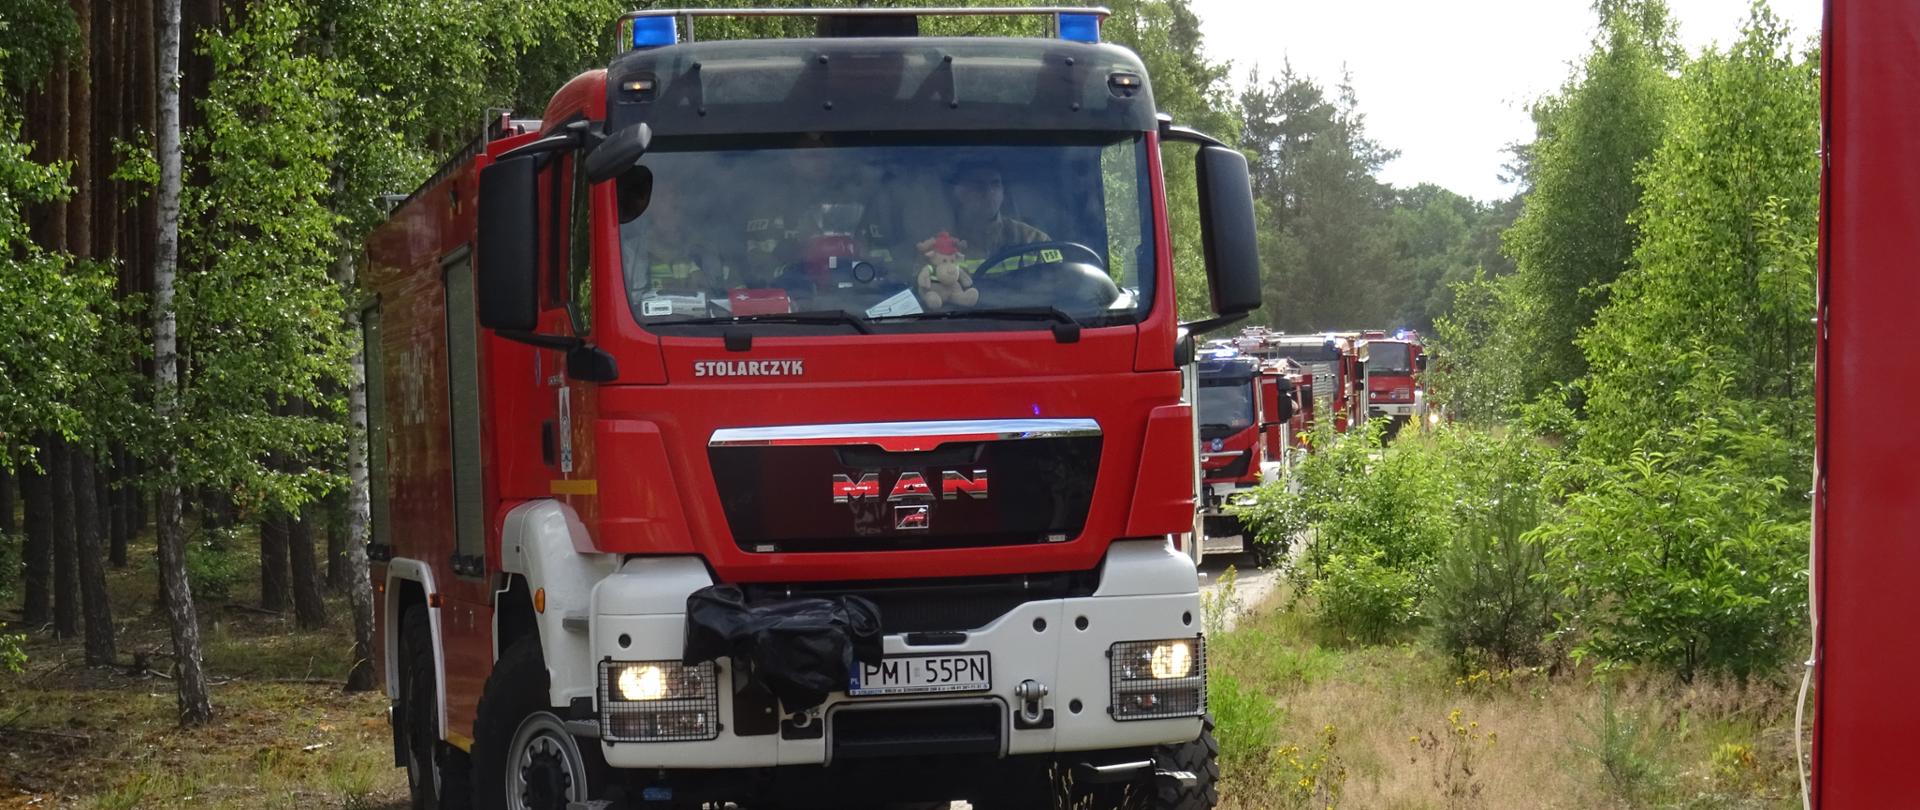 Zdjęcie przedstawia dojazd kolumny samochodów pożarniczych do miejsca ćwiczeń w lesie.